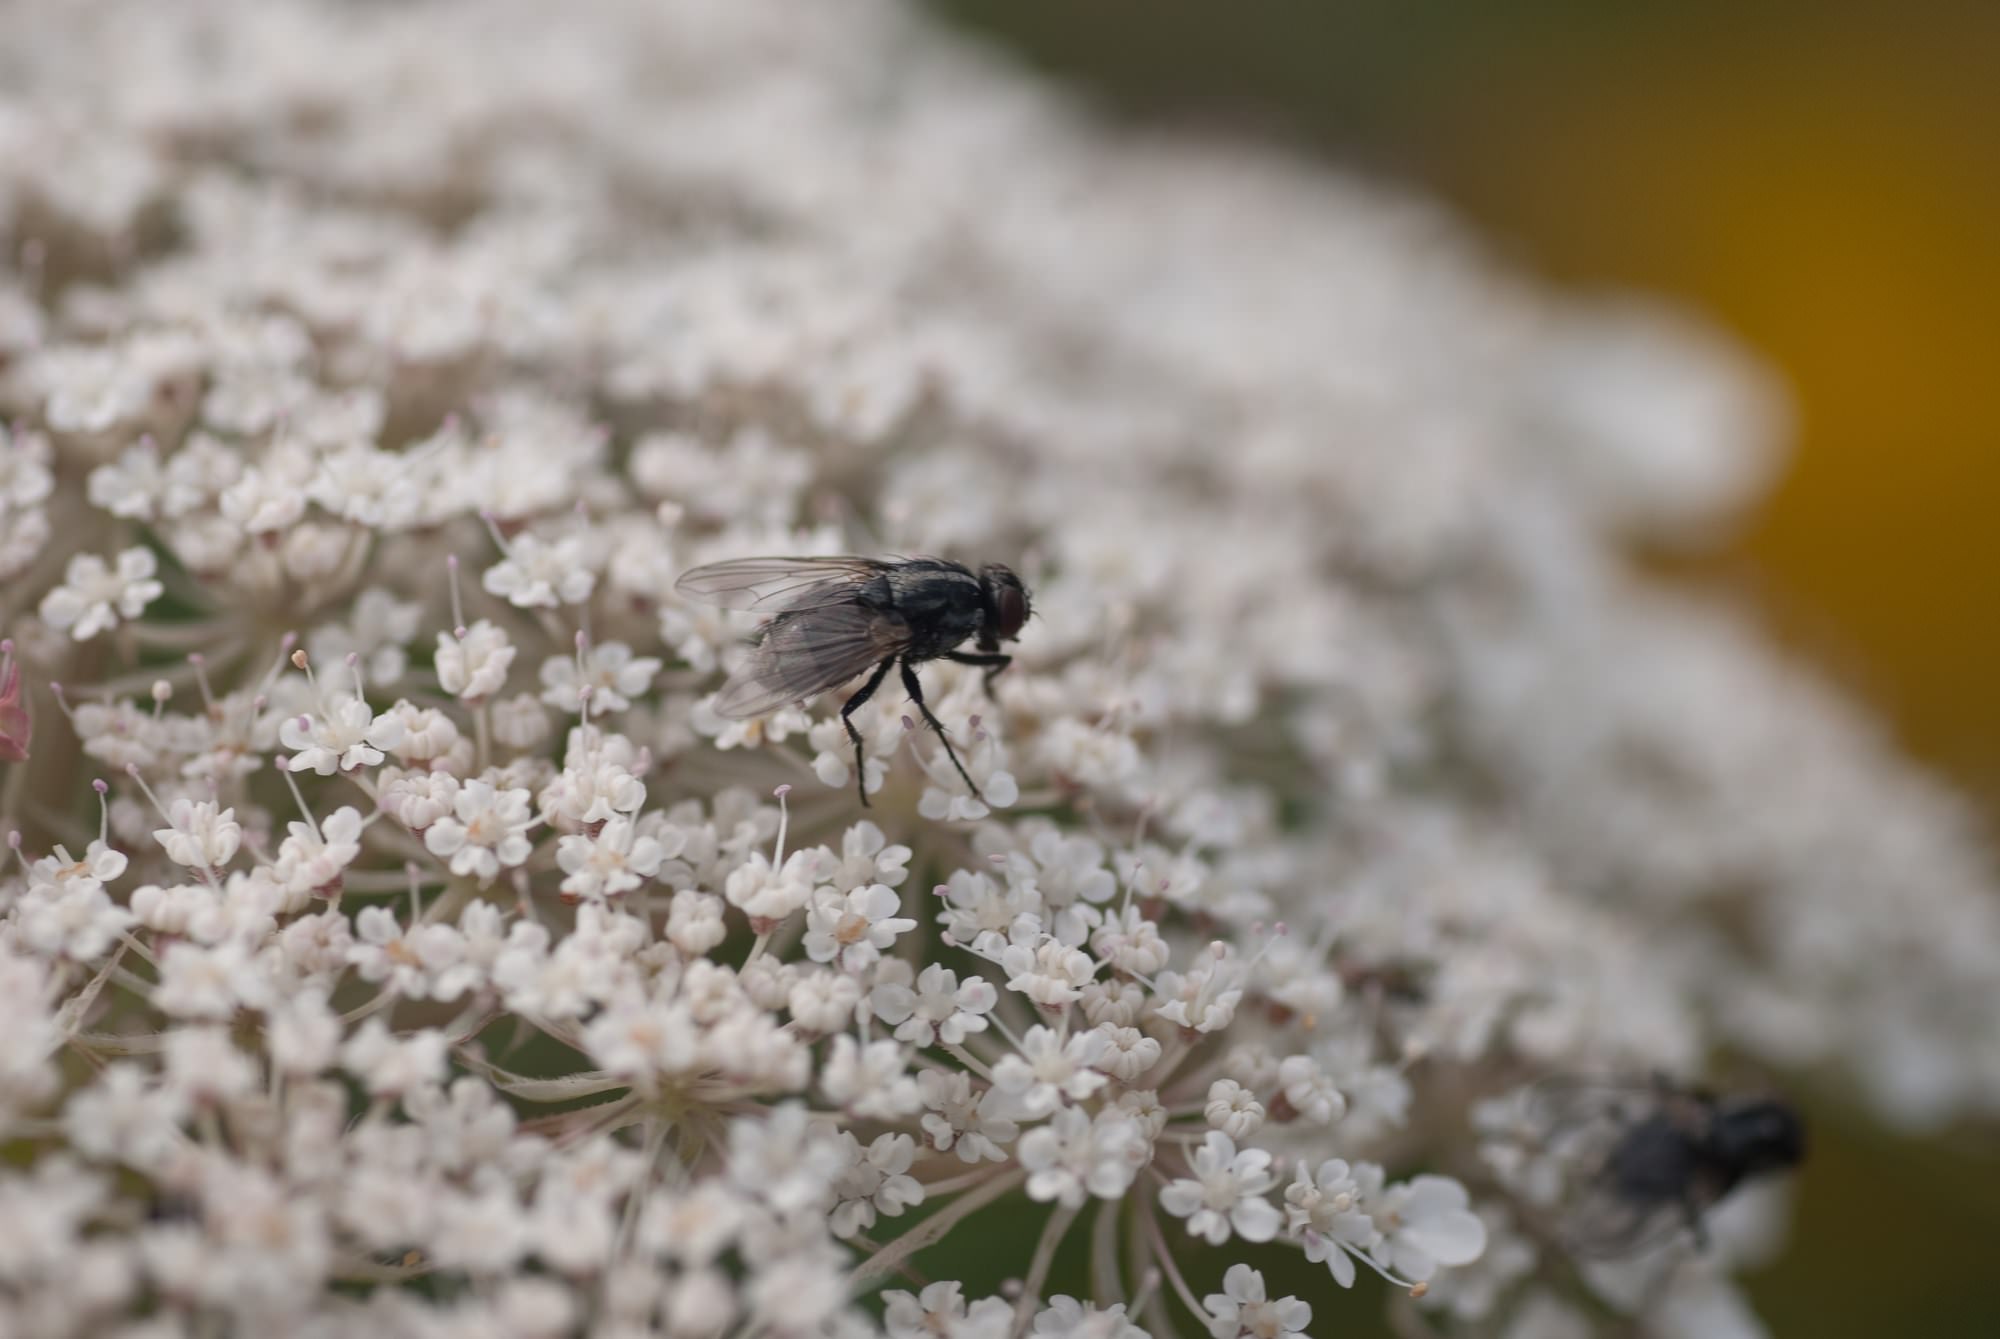 Mouches petite mouche perdue sur un groupe de fleurs blanc